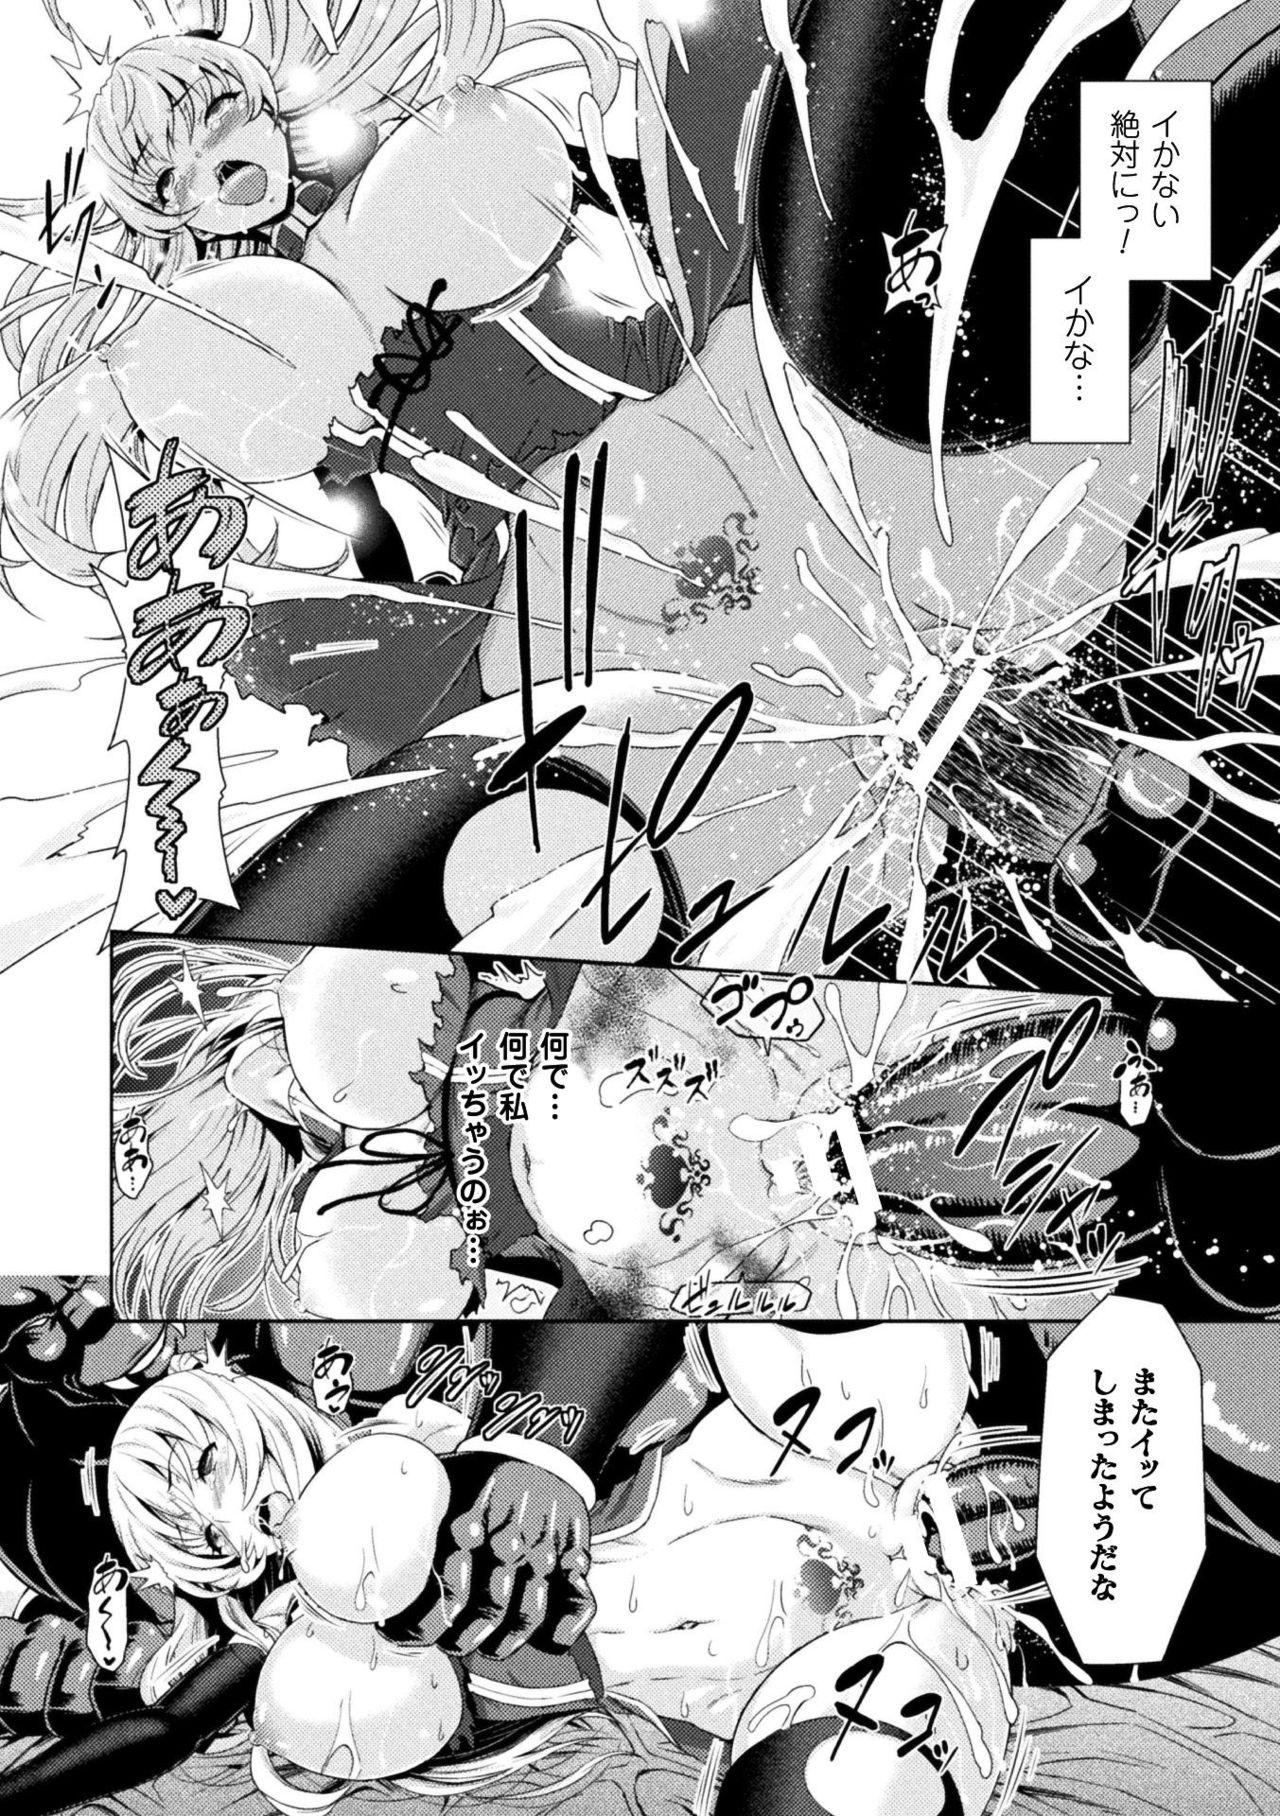 Seigi no Heroine Kangoku File Vol. 15 47